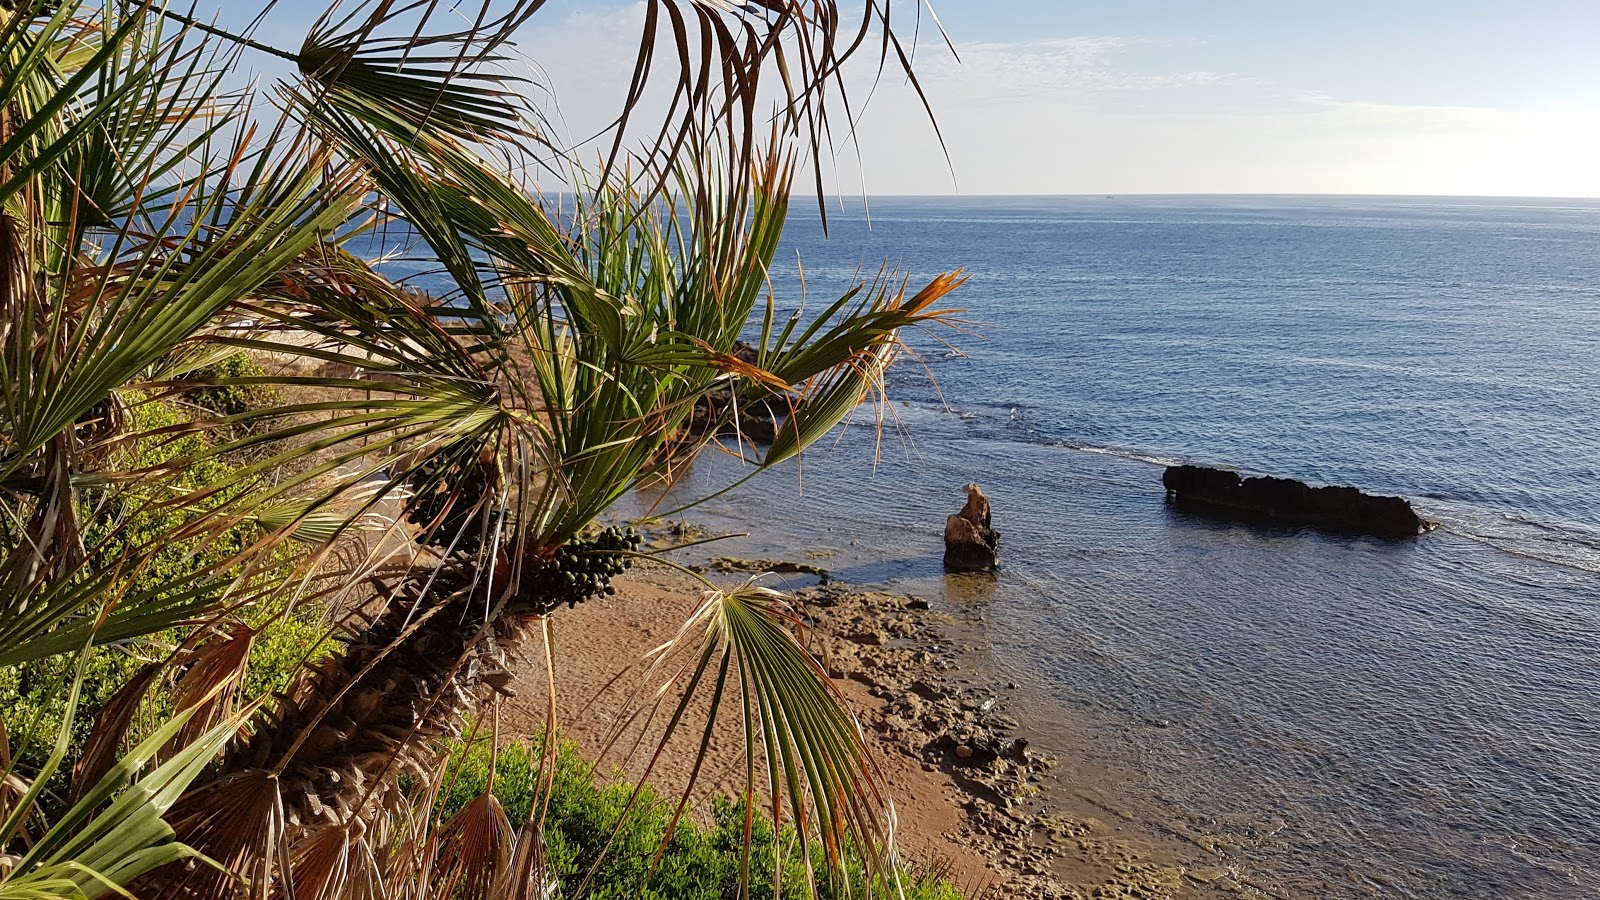 Playa les rotes denia'in fotoğrafı kahverengi kum yüzey ile